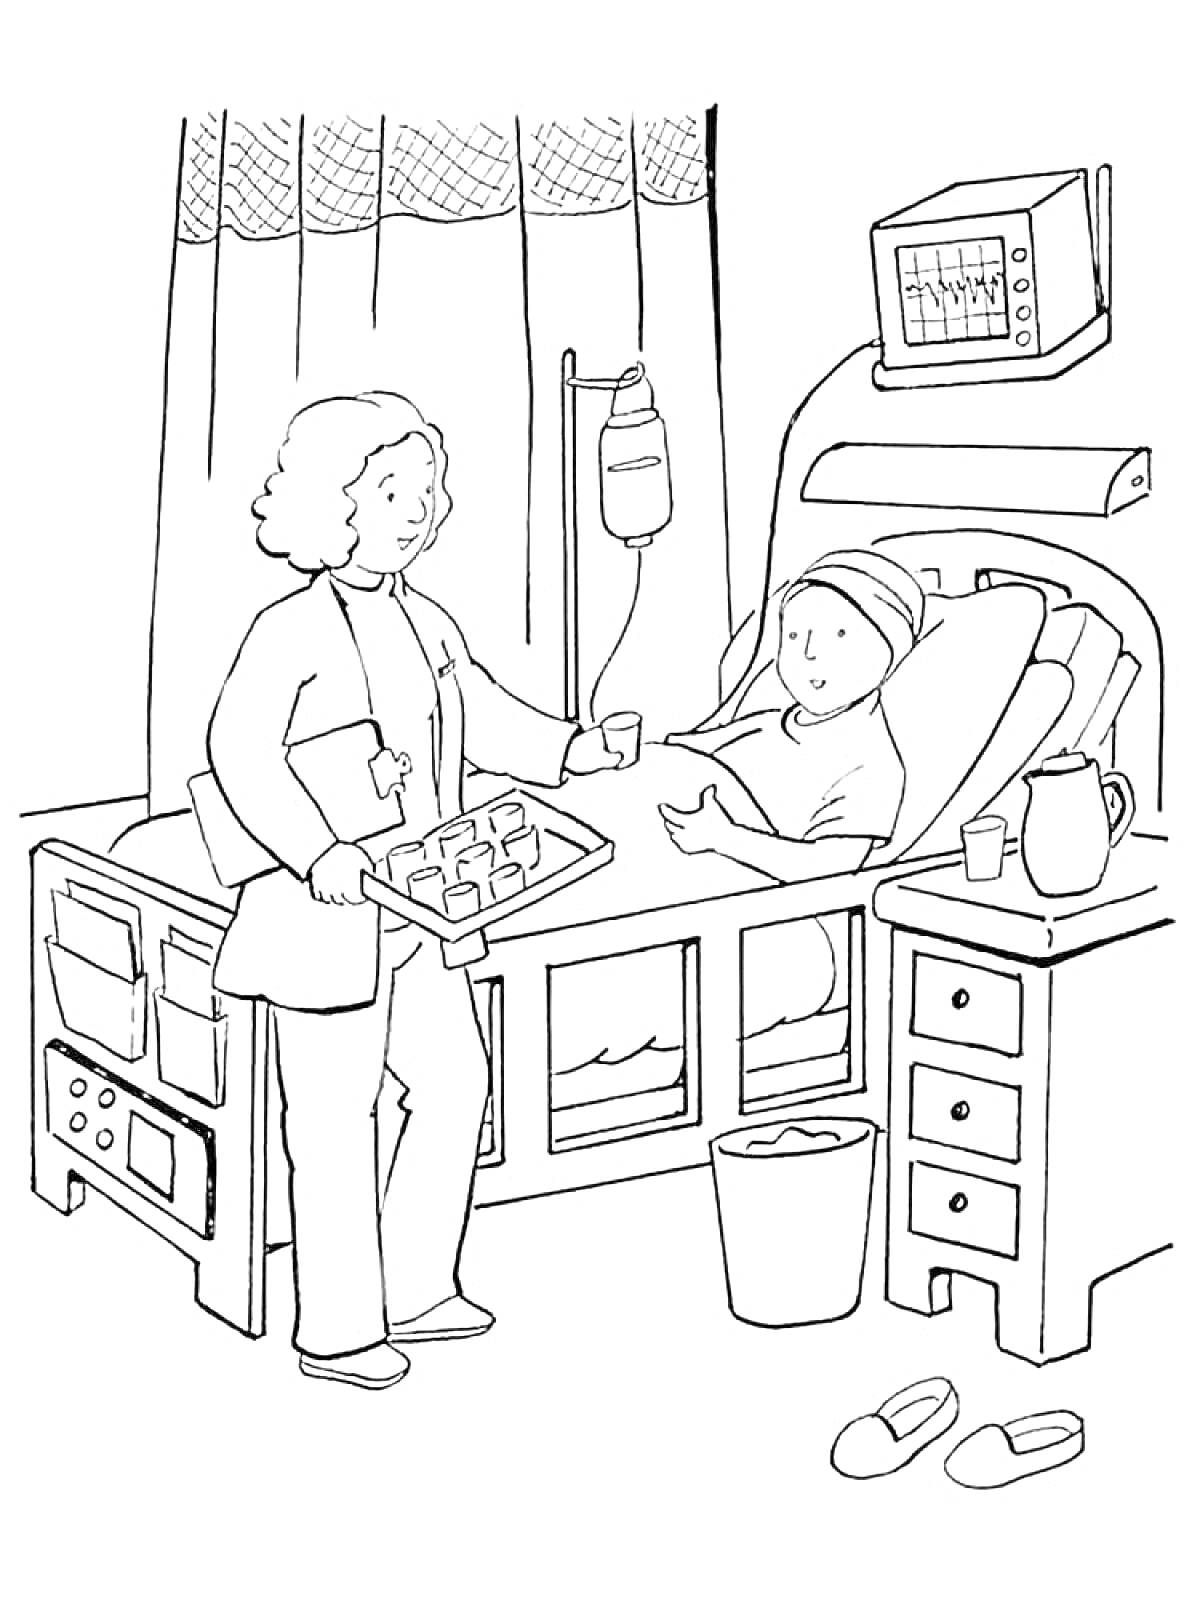 Медсестра ухаживает за пациентом в больнице: койка, капельница, монитор, тумбочка, тапочки, ведро, кувшин и стакан